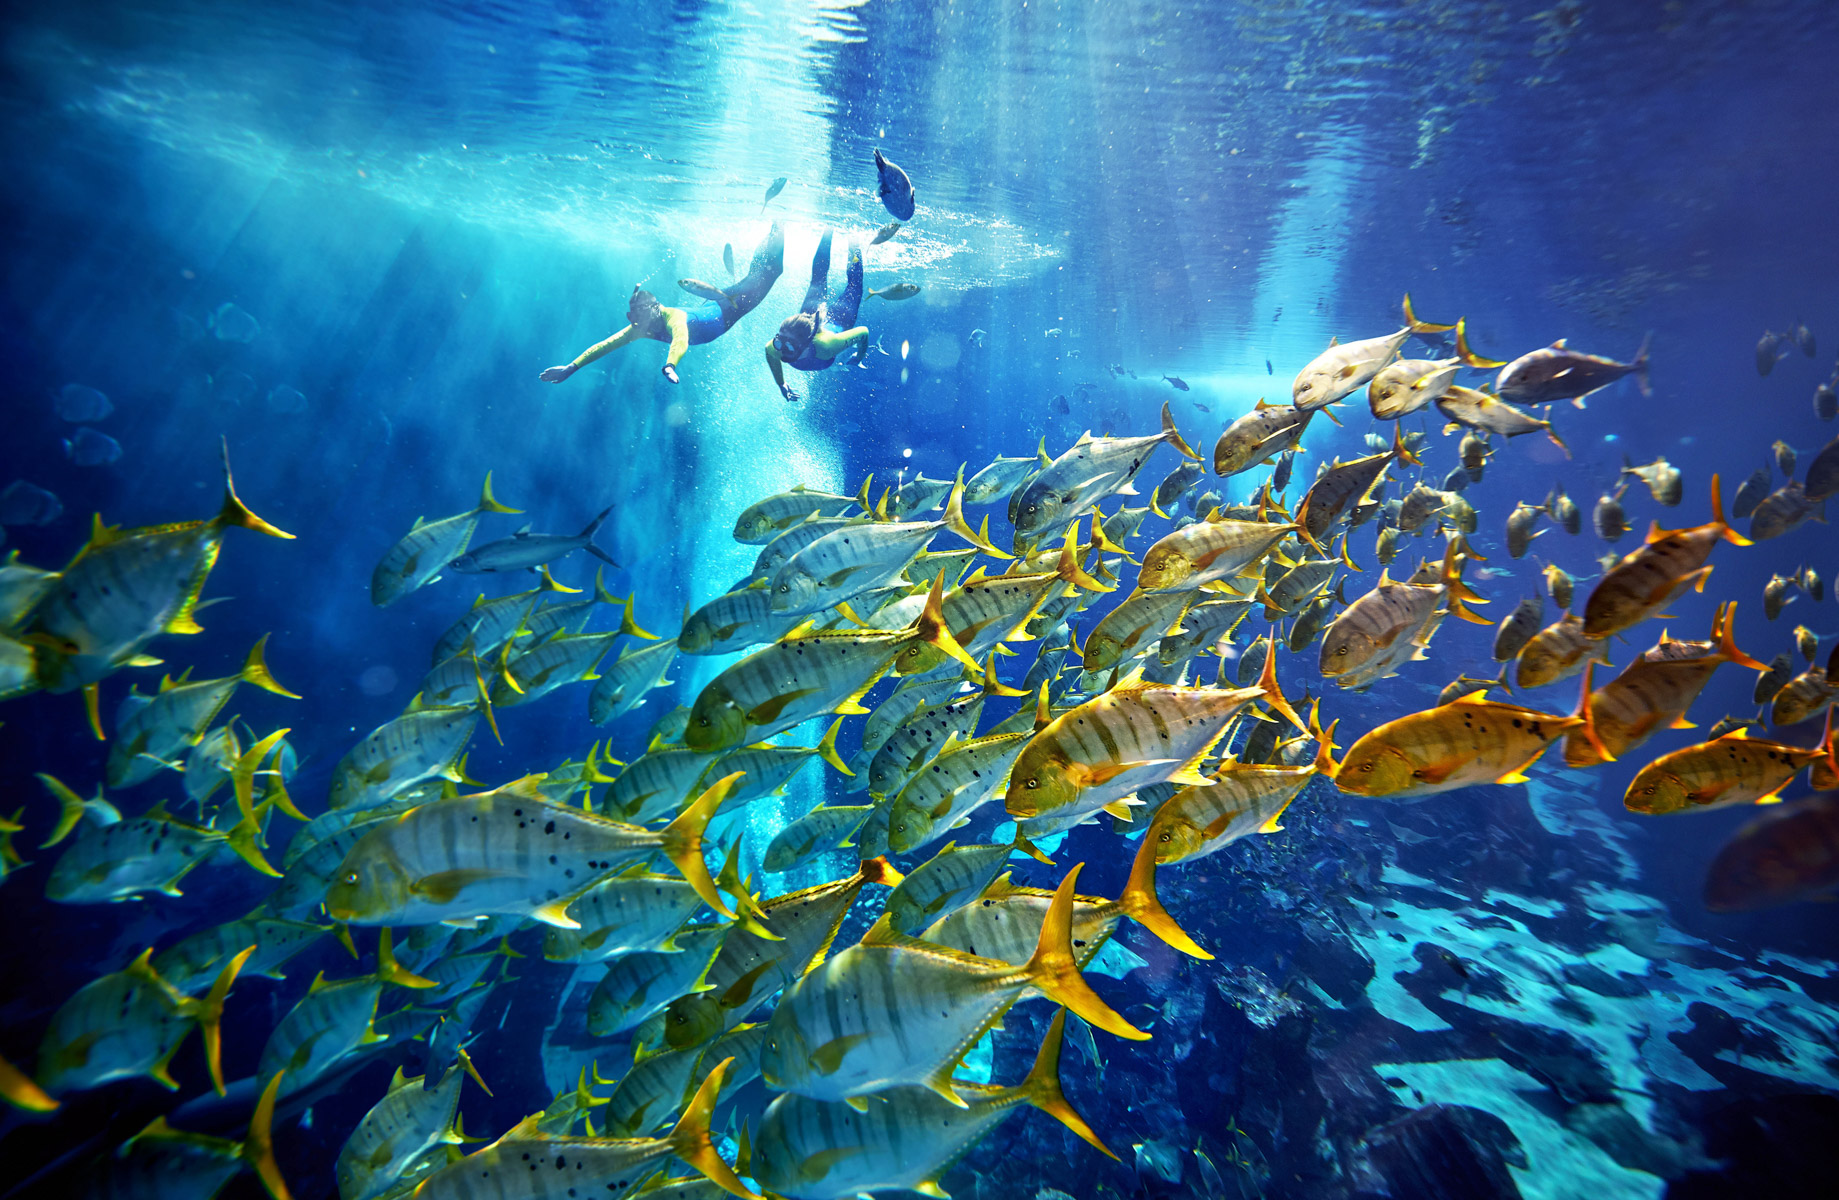 Atlantis The Palm Resort - Crescent Rd, Dubai, UAE - Ultimate Underwater Snorkel Adventure